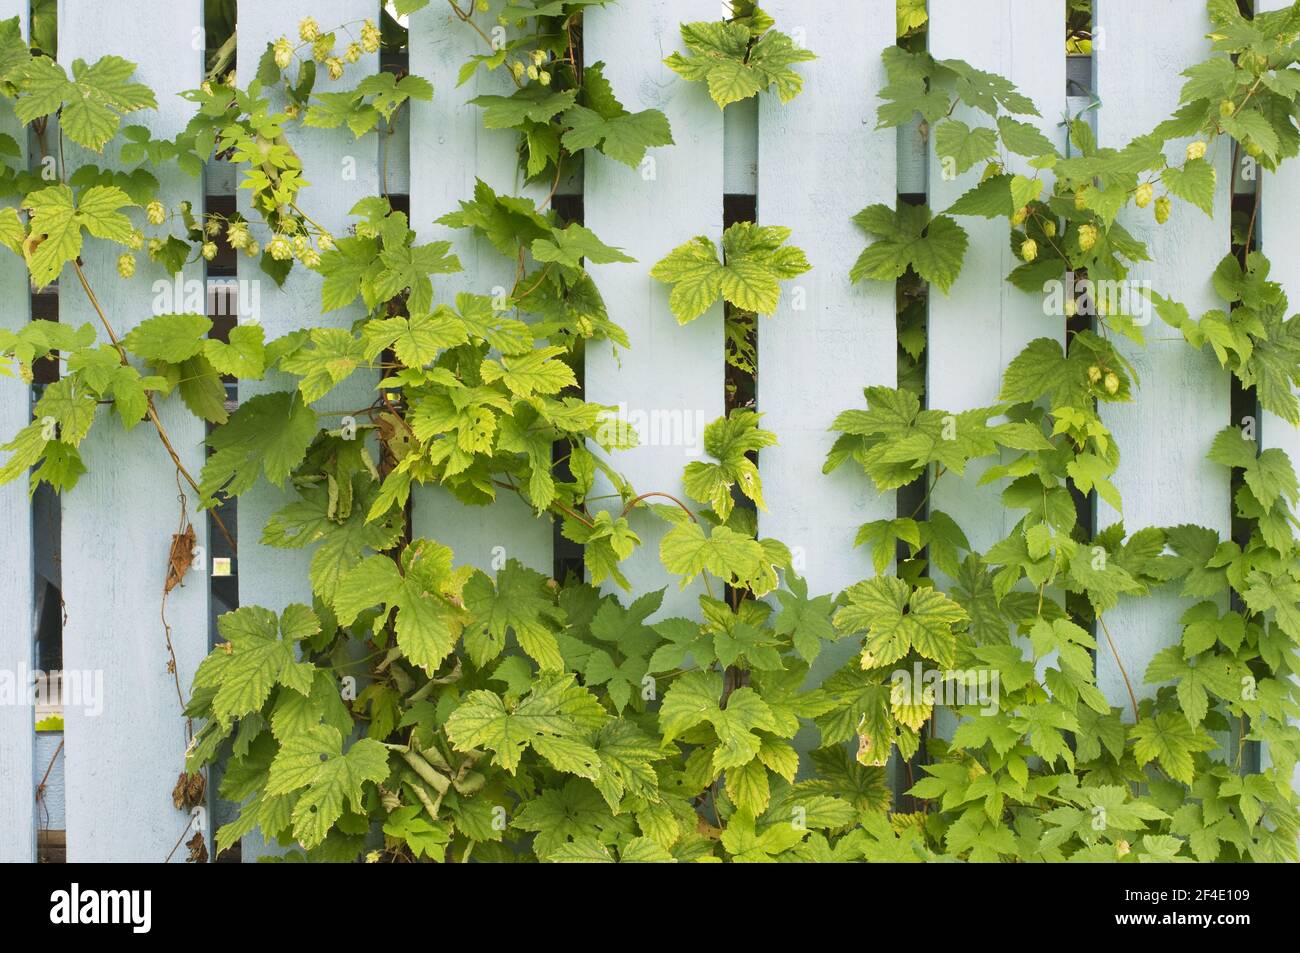 Hop (Humulus lupulus) climbing on wood fence Stock Photo